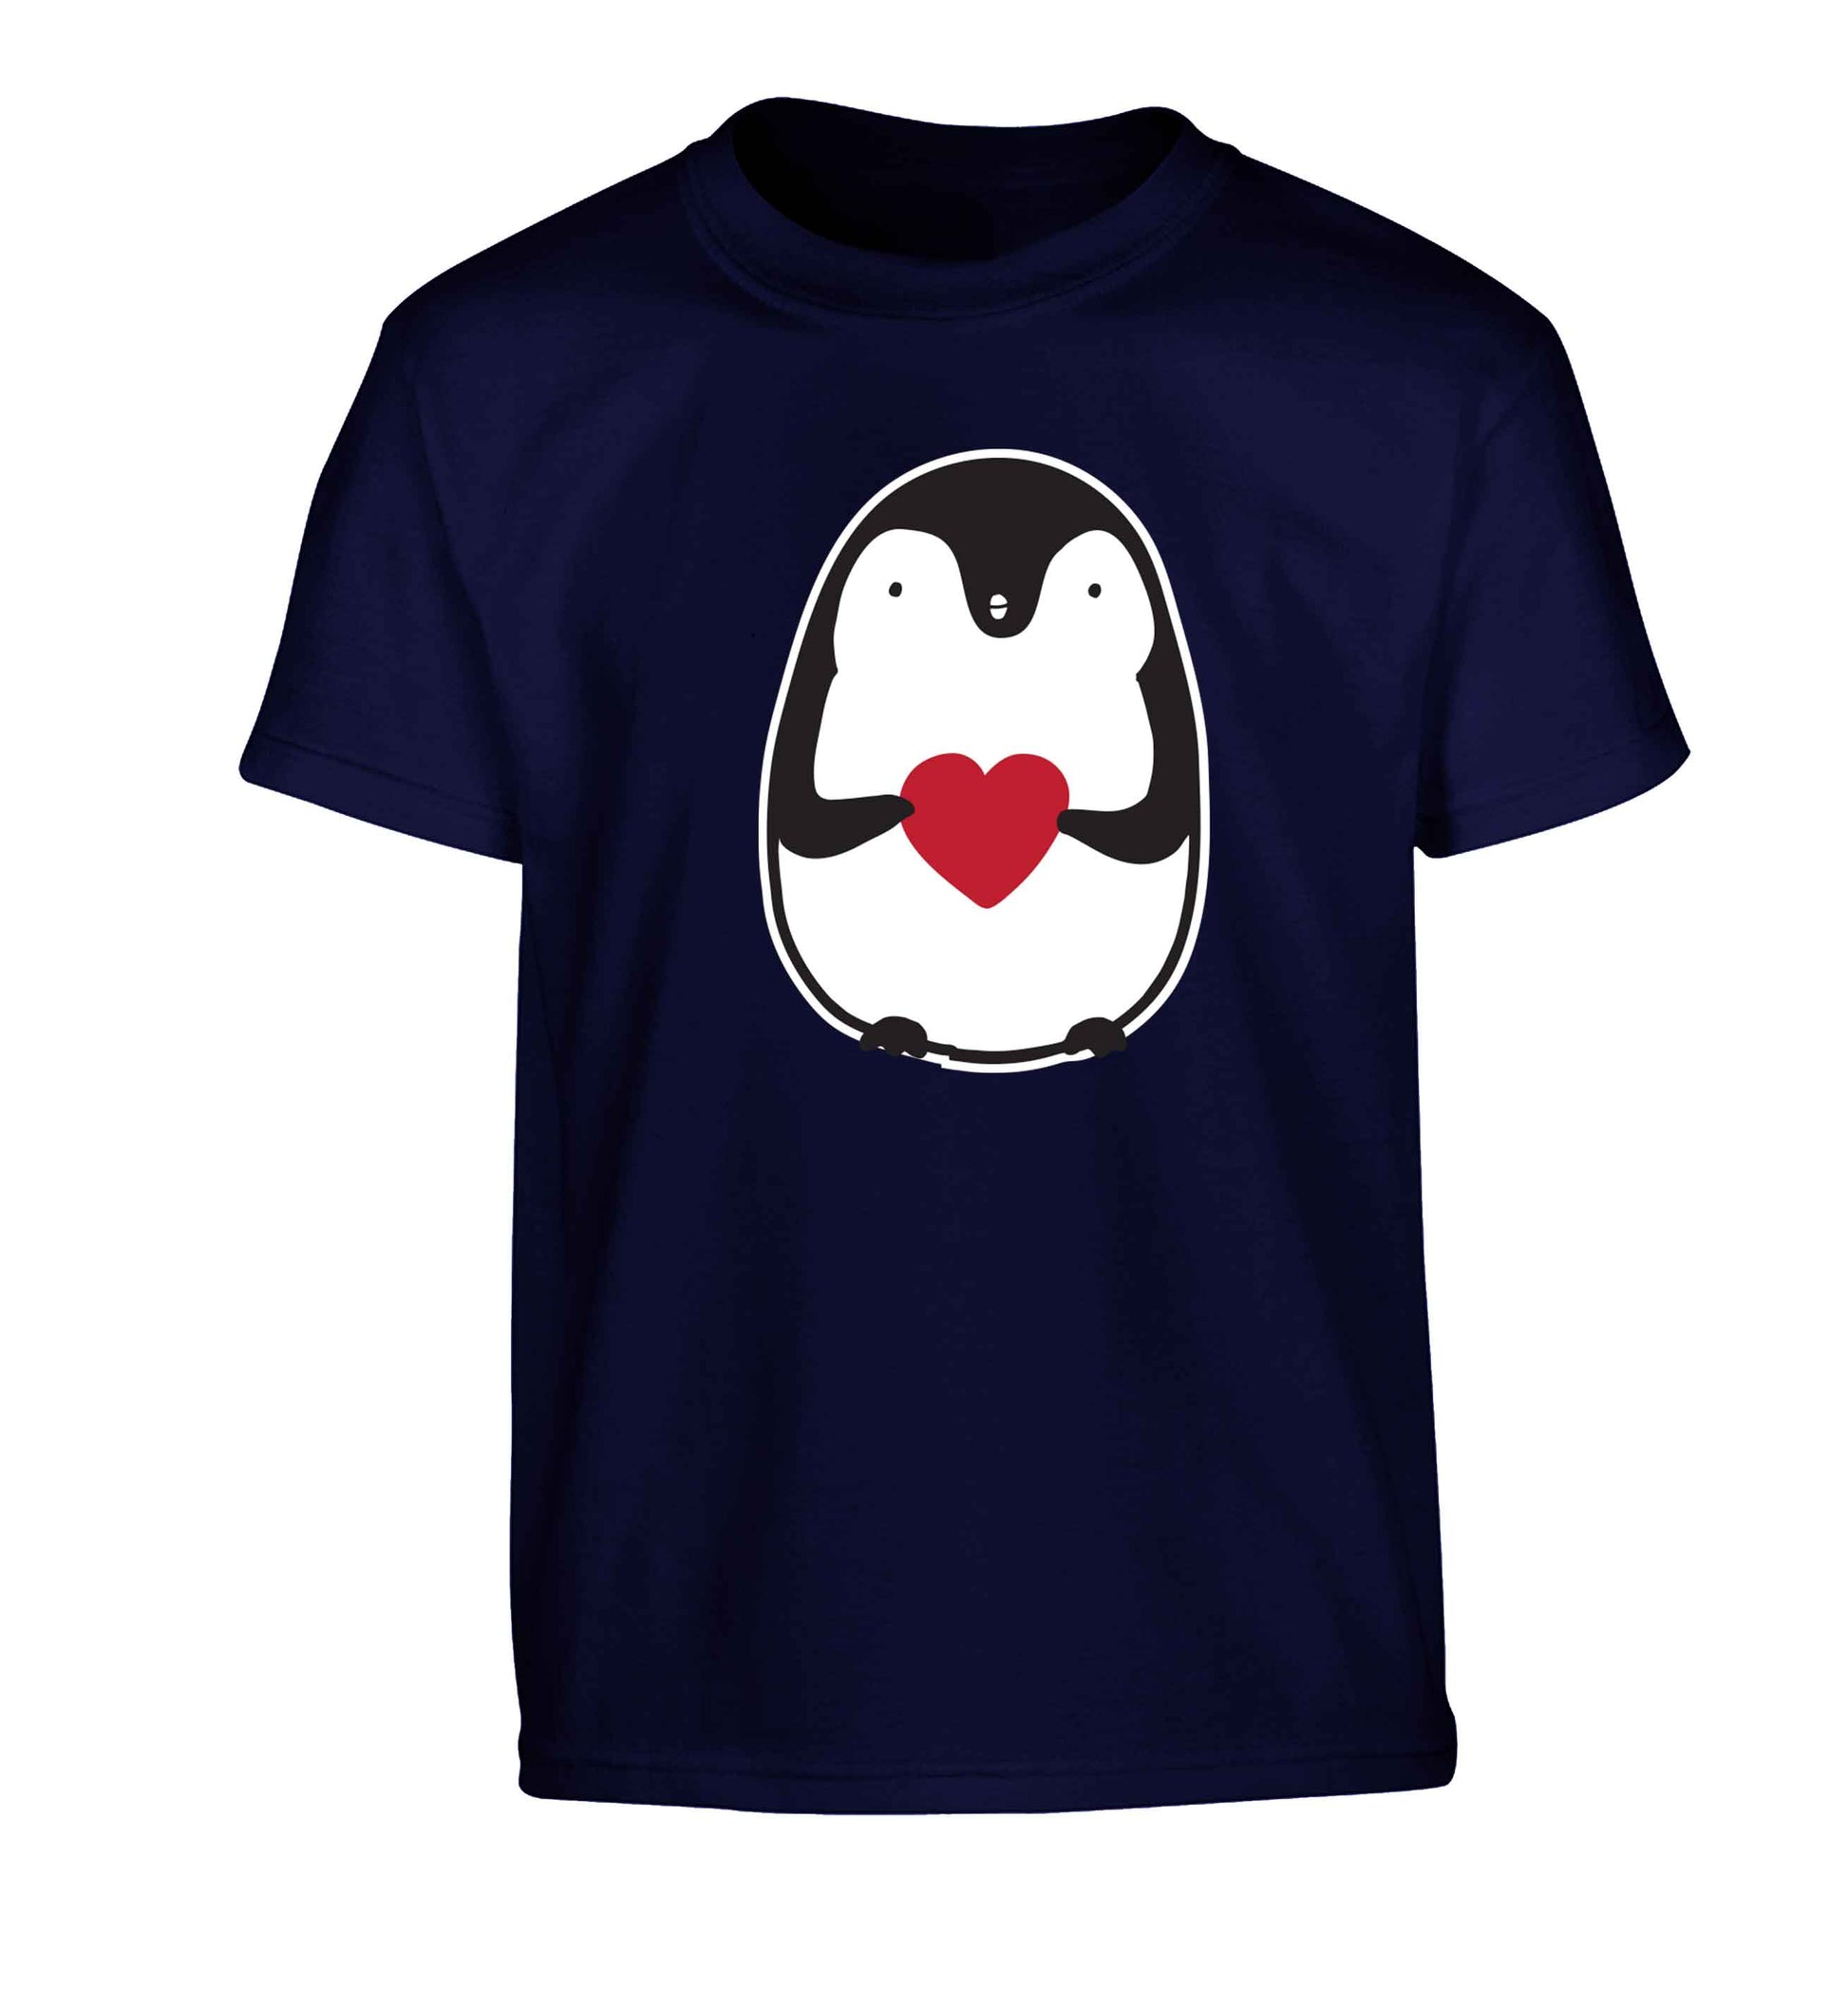 Cute penguin heart Children's navy Tshirt 12-13 Years